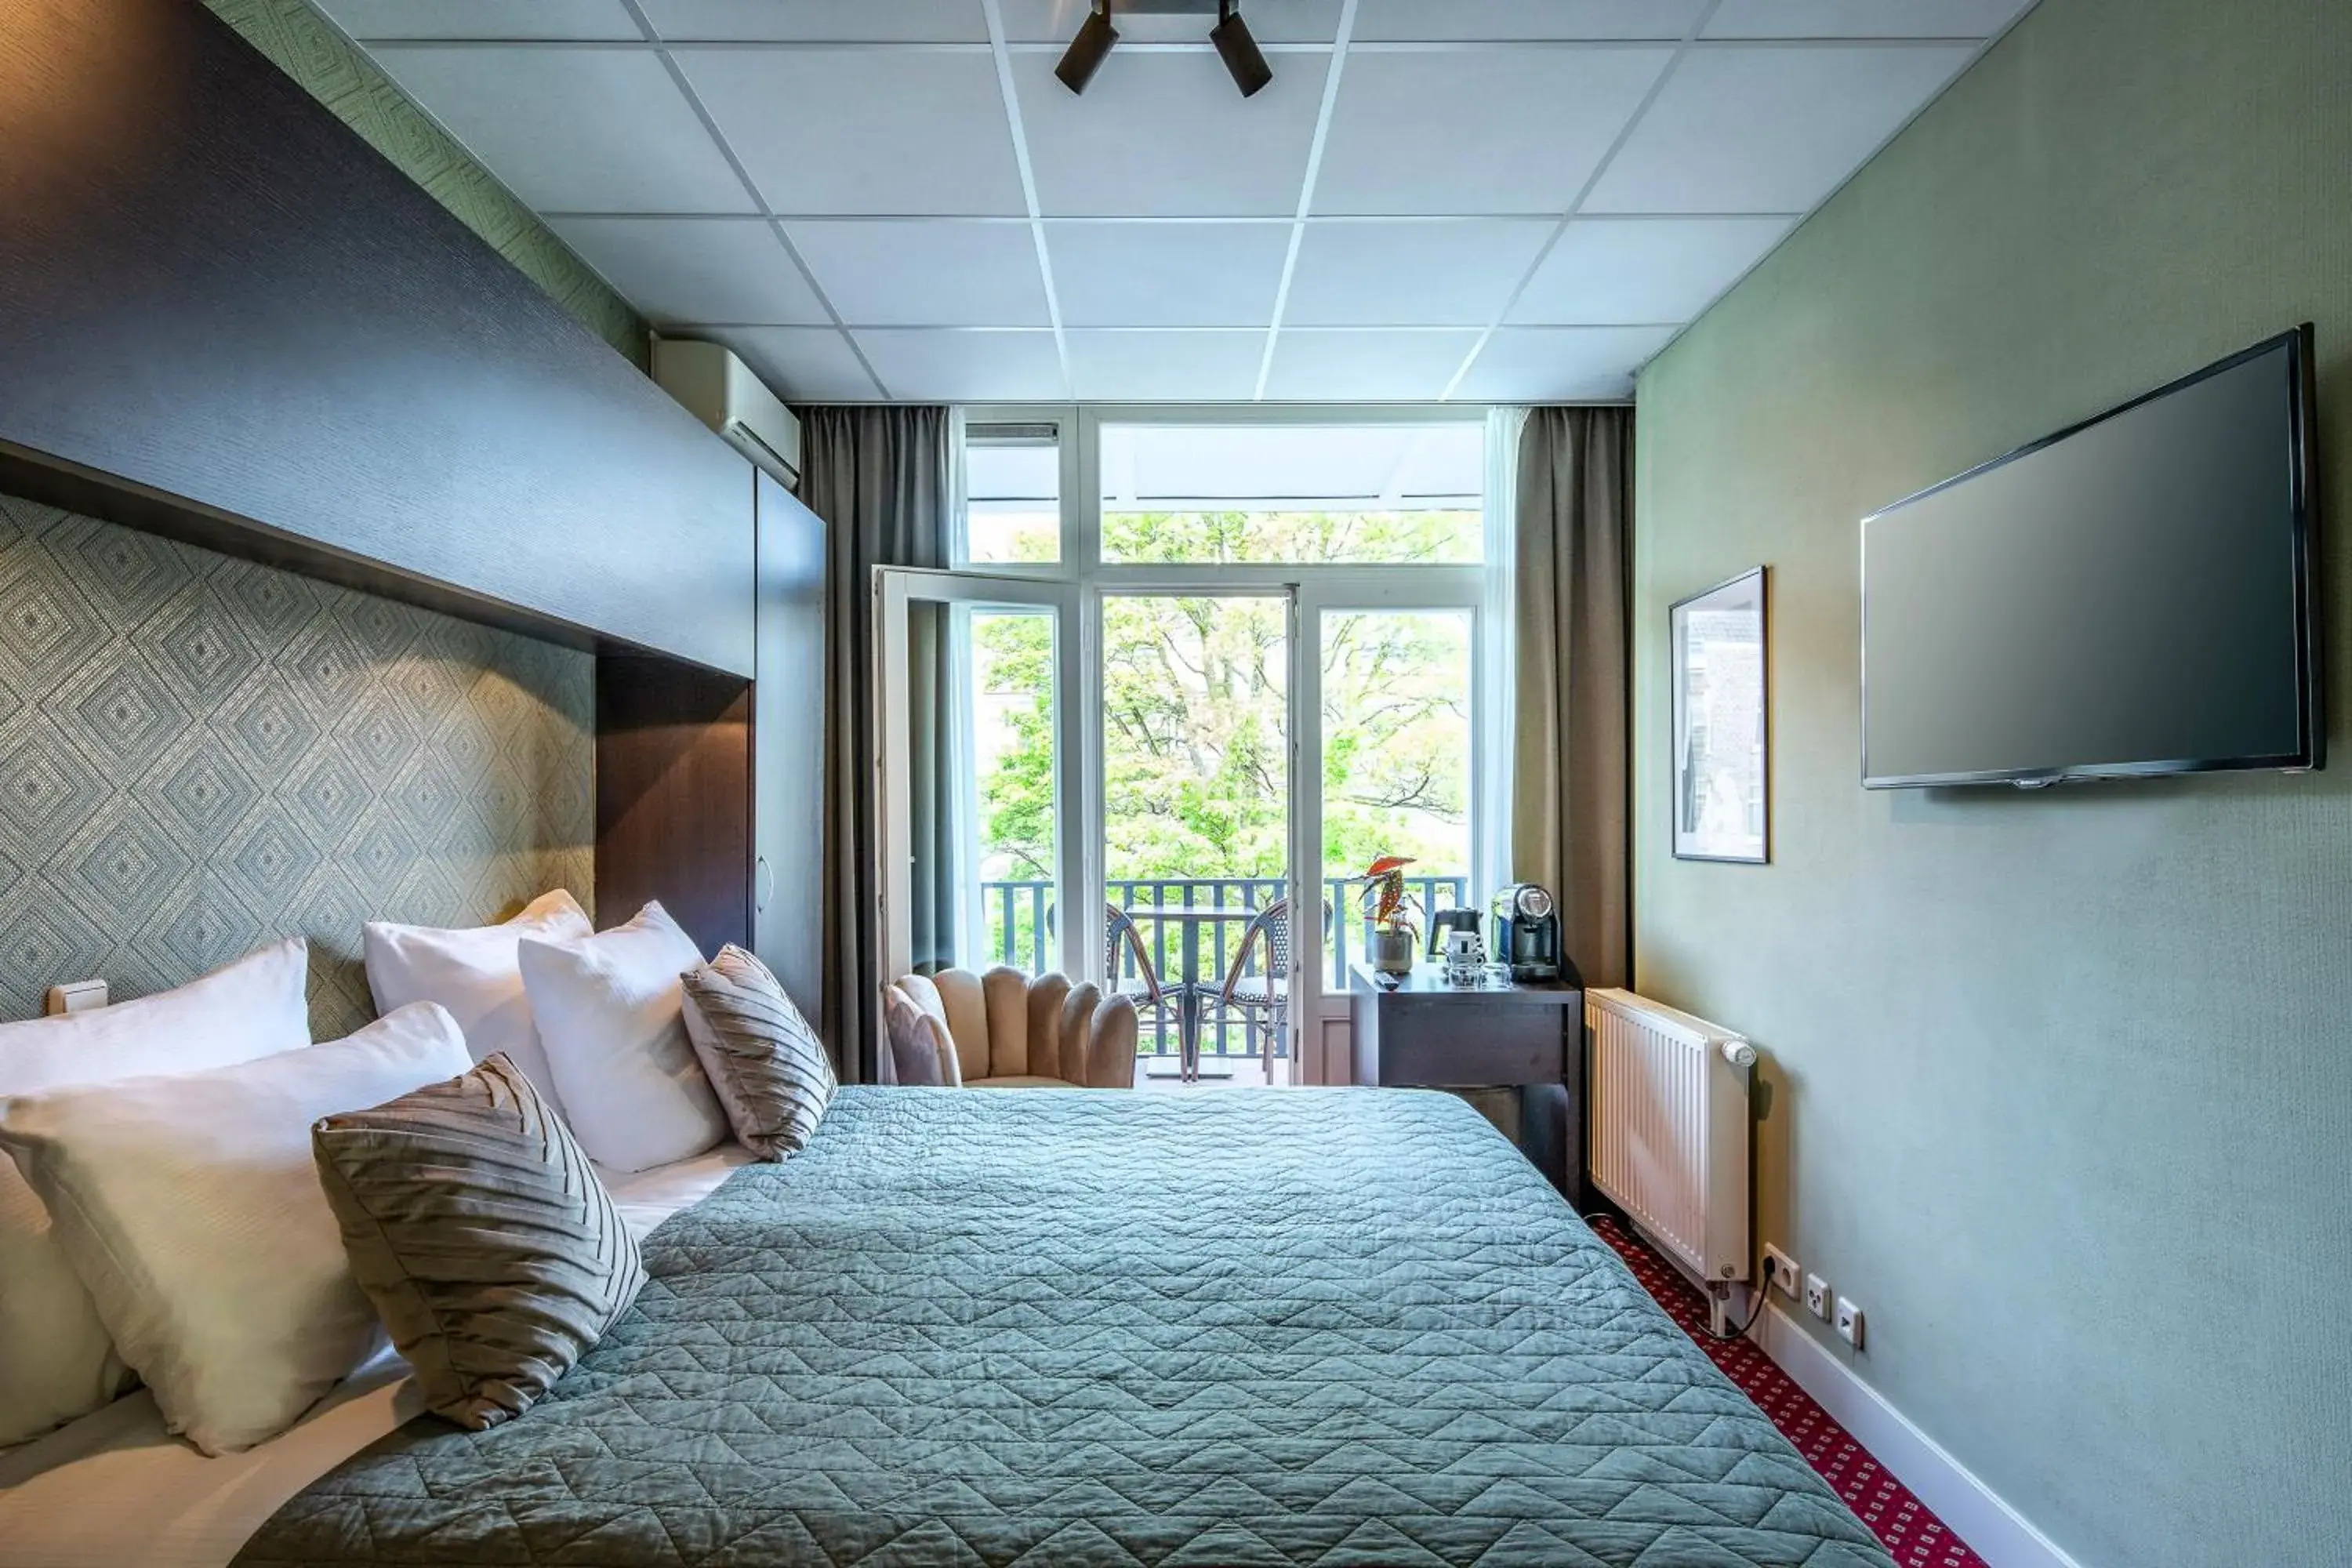 Bed in Hotel Atlantis Amsterdam